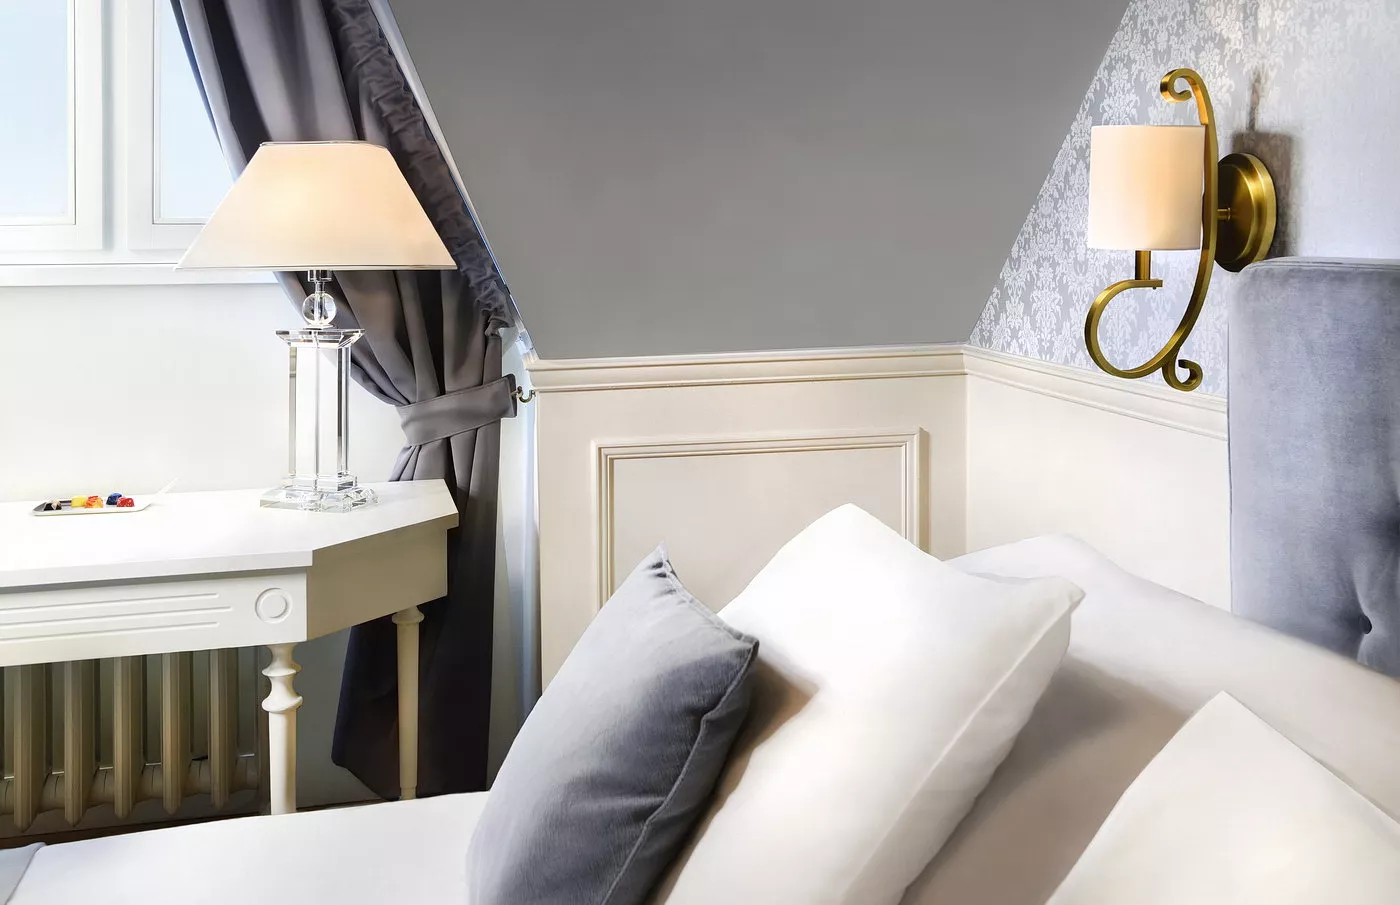 Izba s manželskou posteľou v Hoteli Lomnica vo Vysokých Tatrách - detail